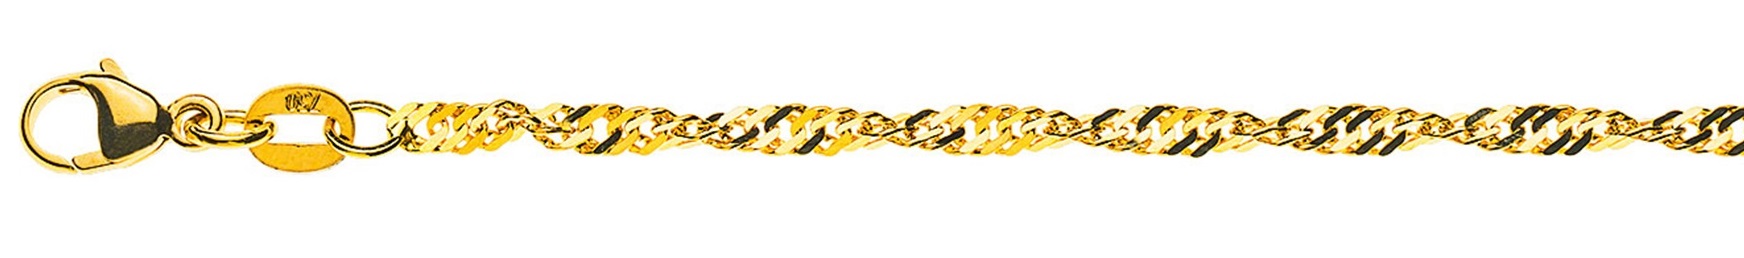 AURONOS Prestige Halskette Gelbgold 18K Singapurkette 40cm 2.4mm